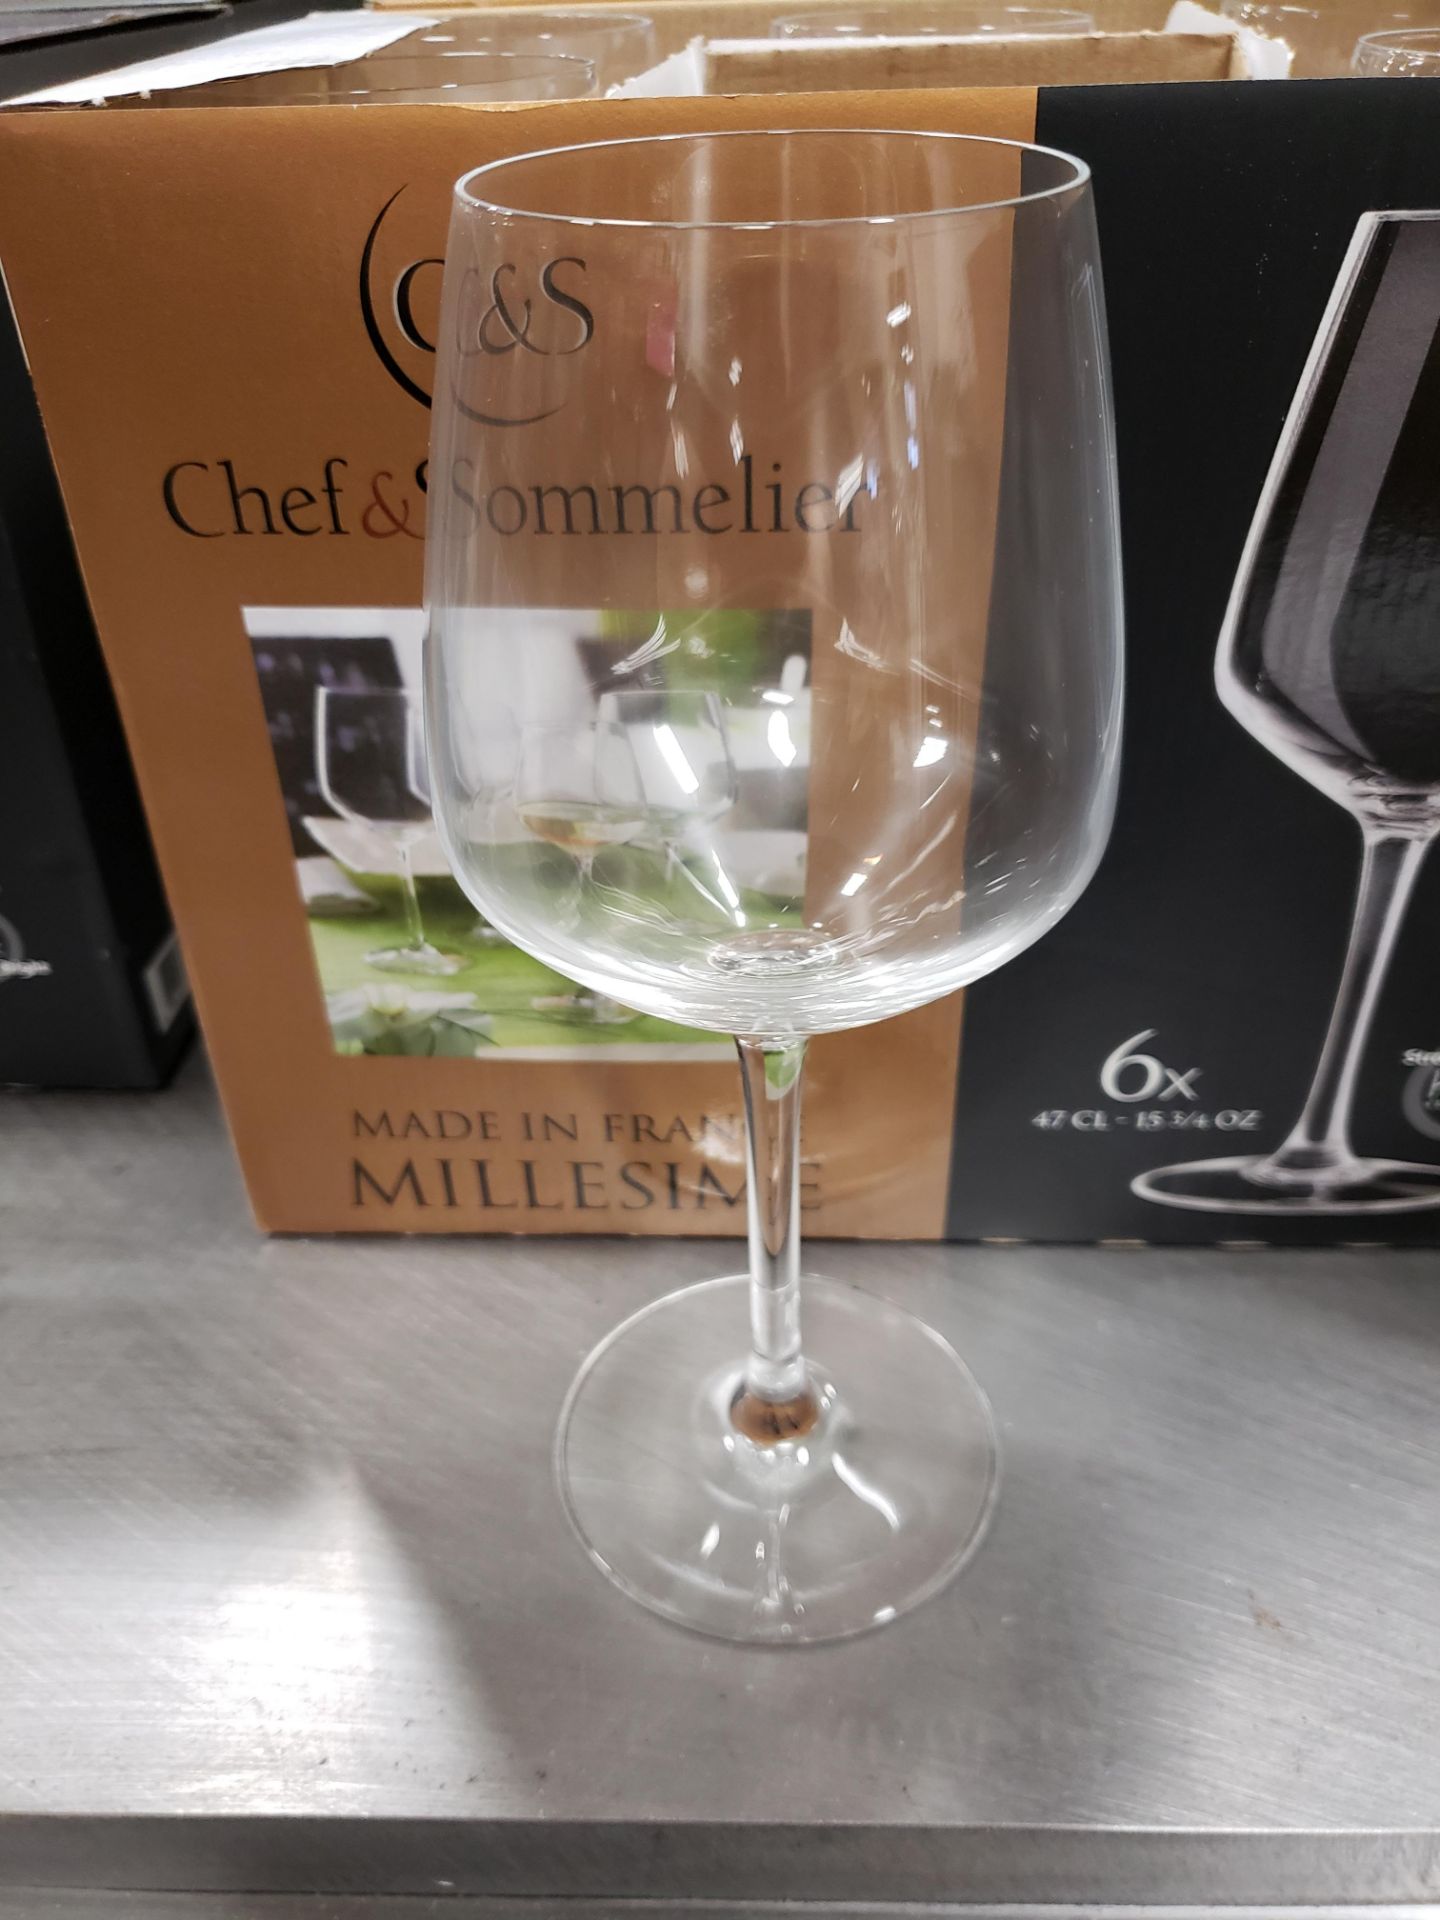 Chef & Sommelier 13.75 oz Wine Glasses - Lot of 24